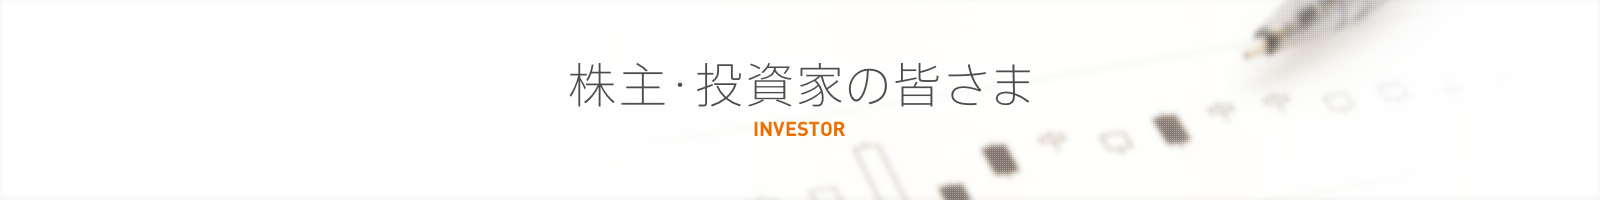 株主・投資家の皆さま INVESTOR